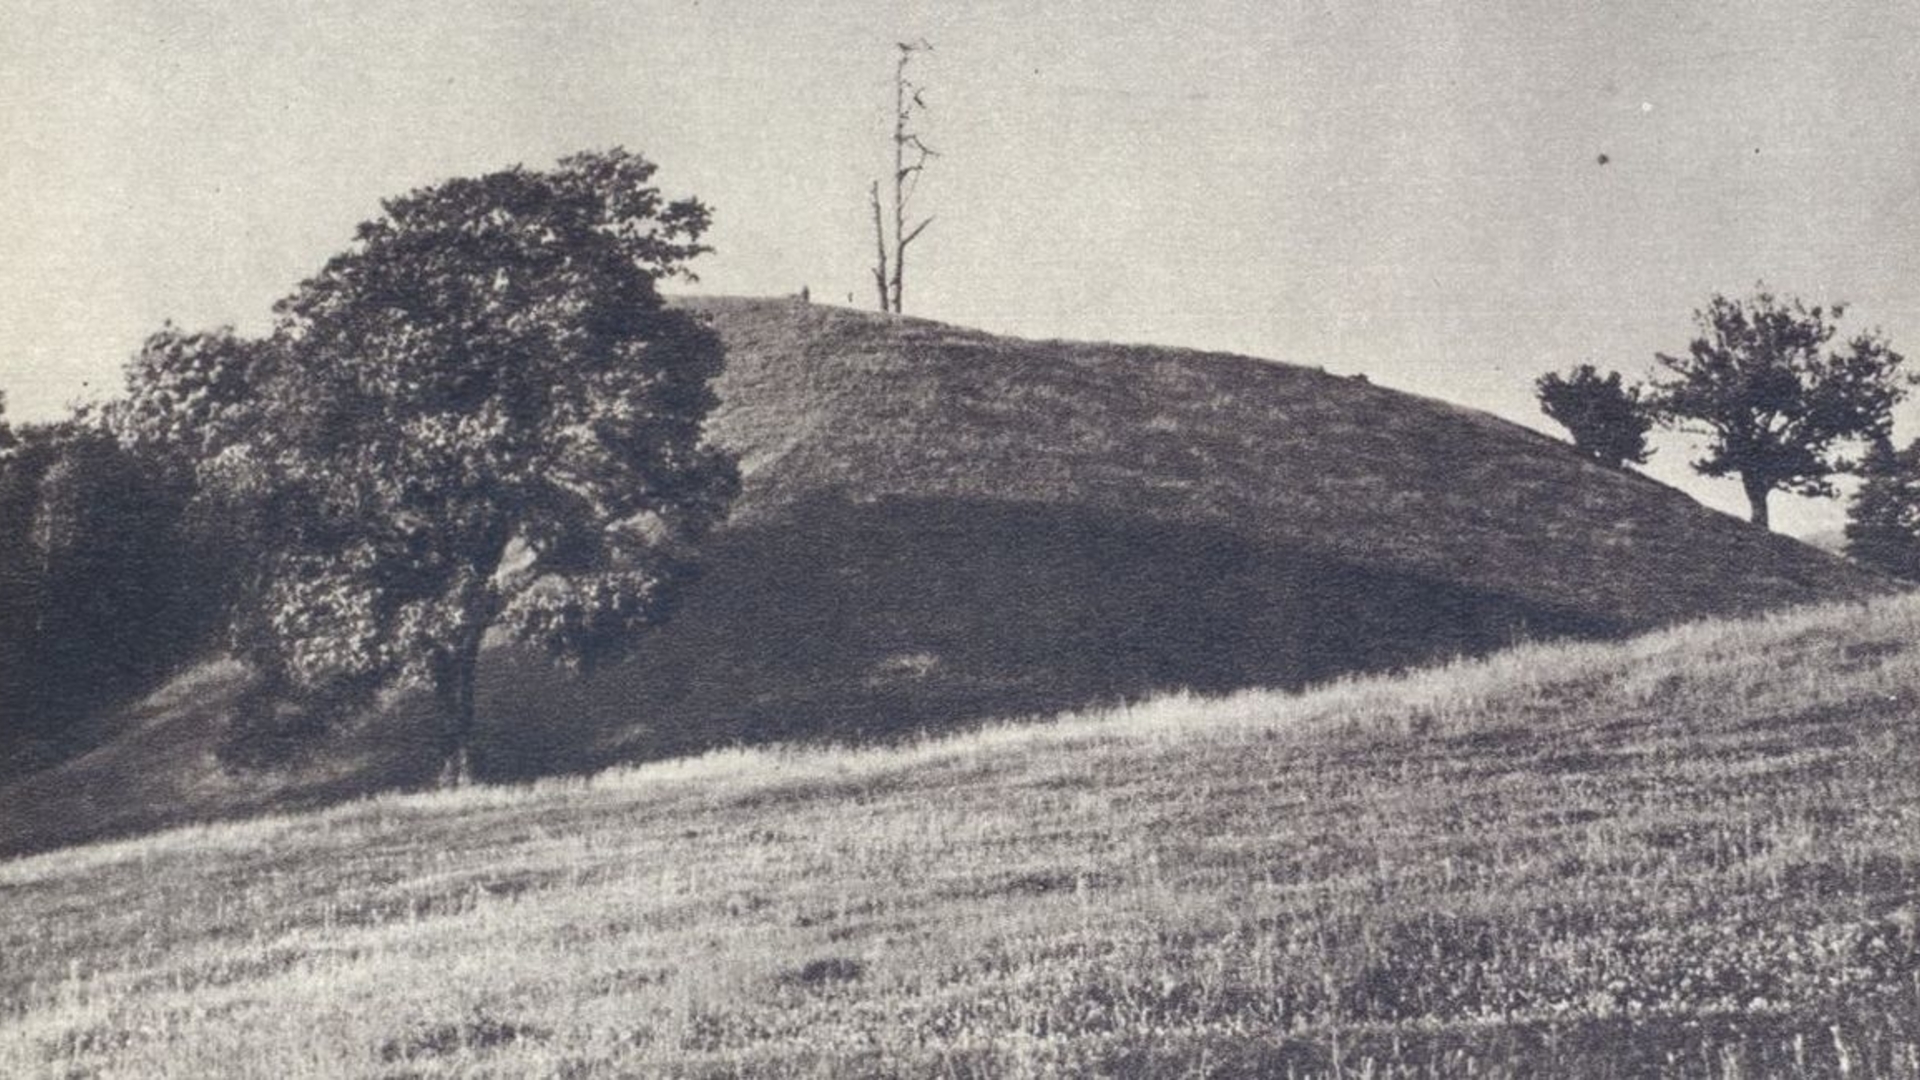 Taurapilis mound